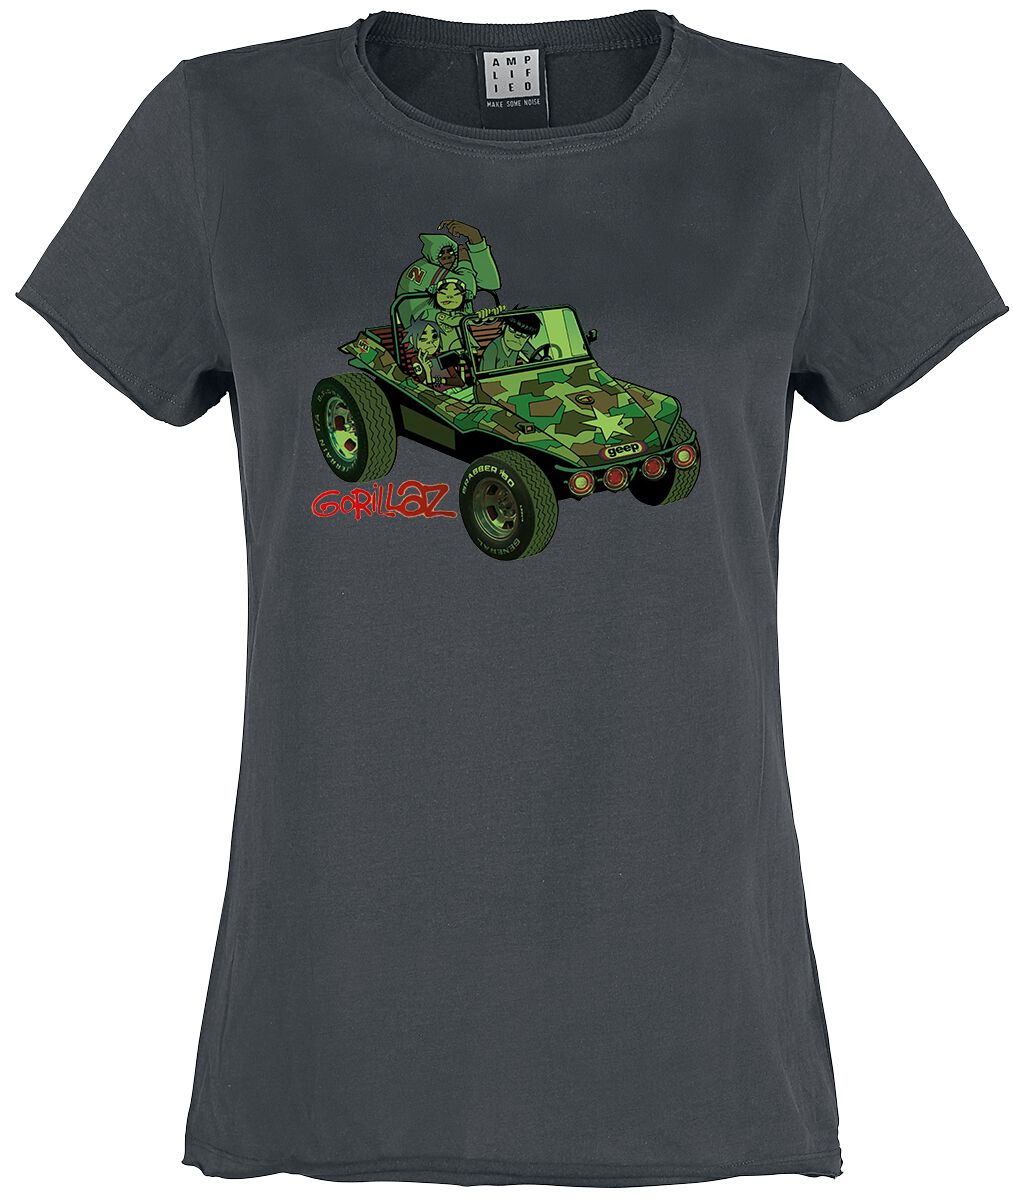 Gorillaz T-Shirt - Amplified Collection - Geep - S bis XL - für Damen - Größe L - charcoal  - Lizenziertes Merchandise!